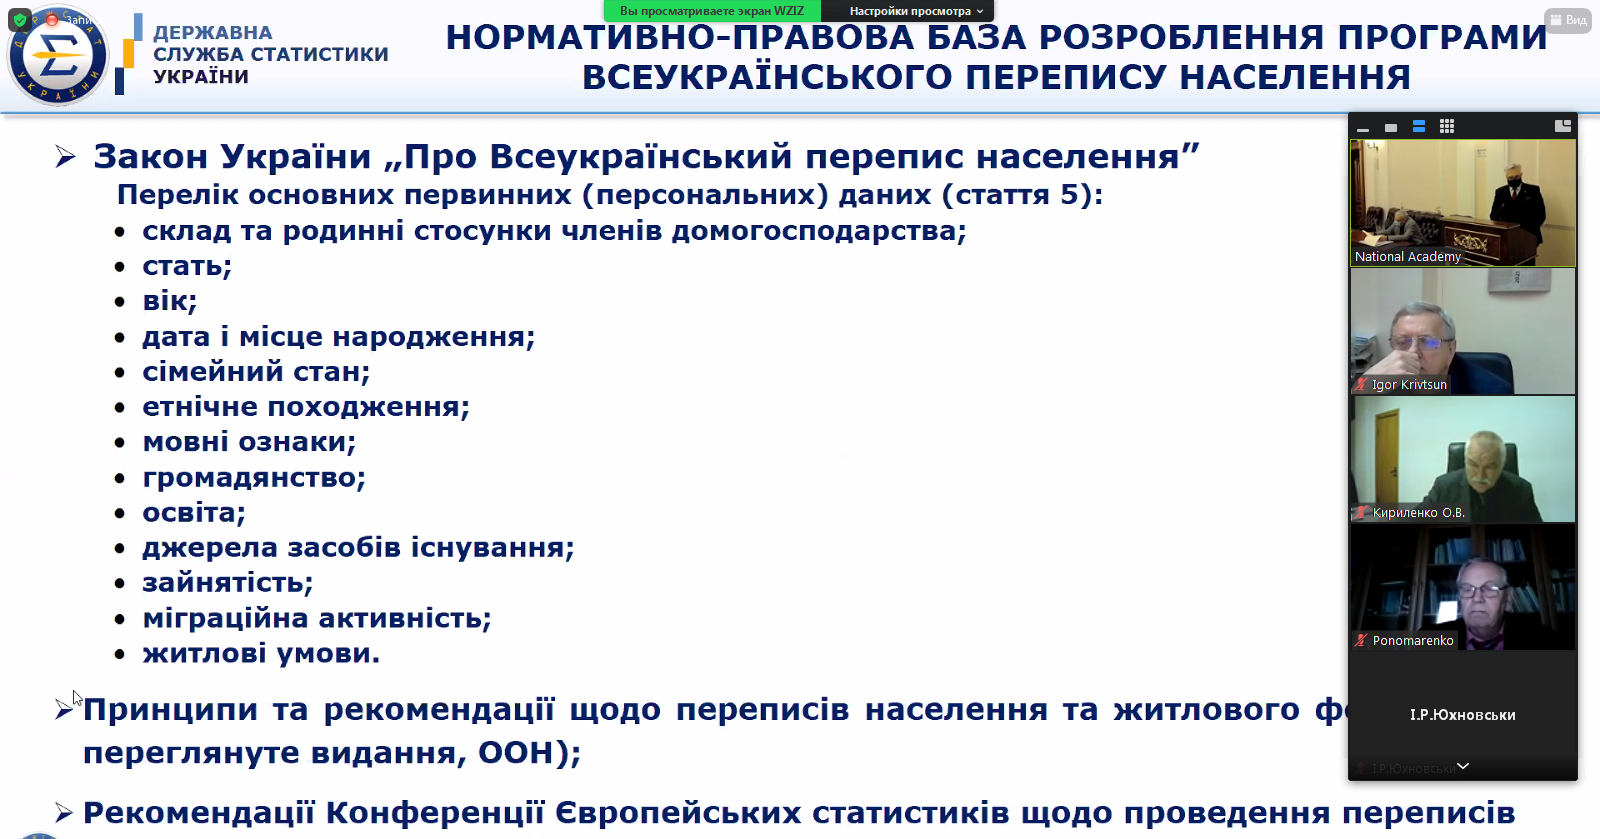 Программа Переписи населения Украины будет содержать более 50 вопросов